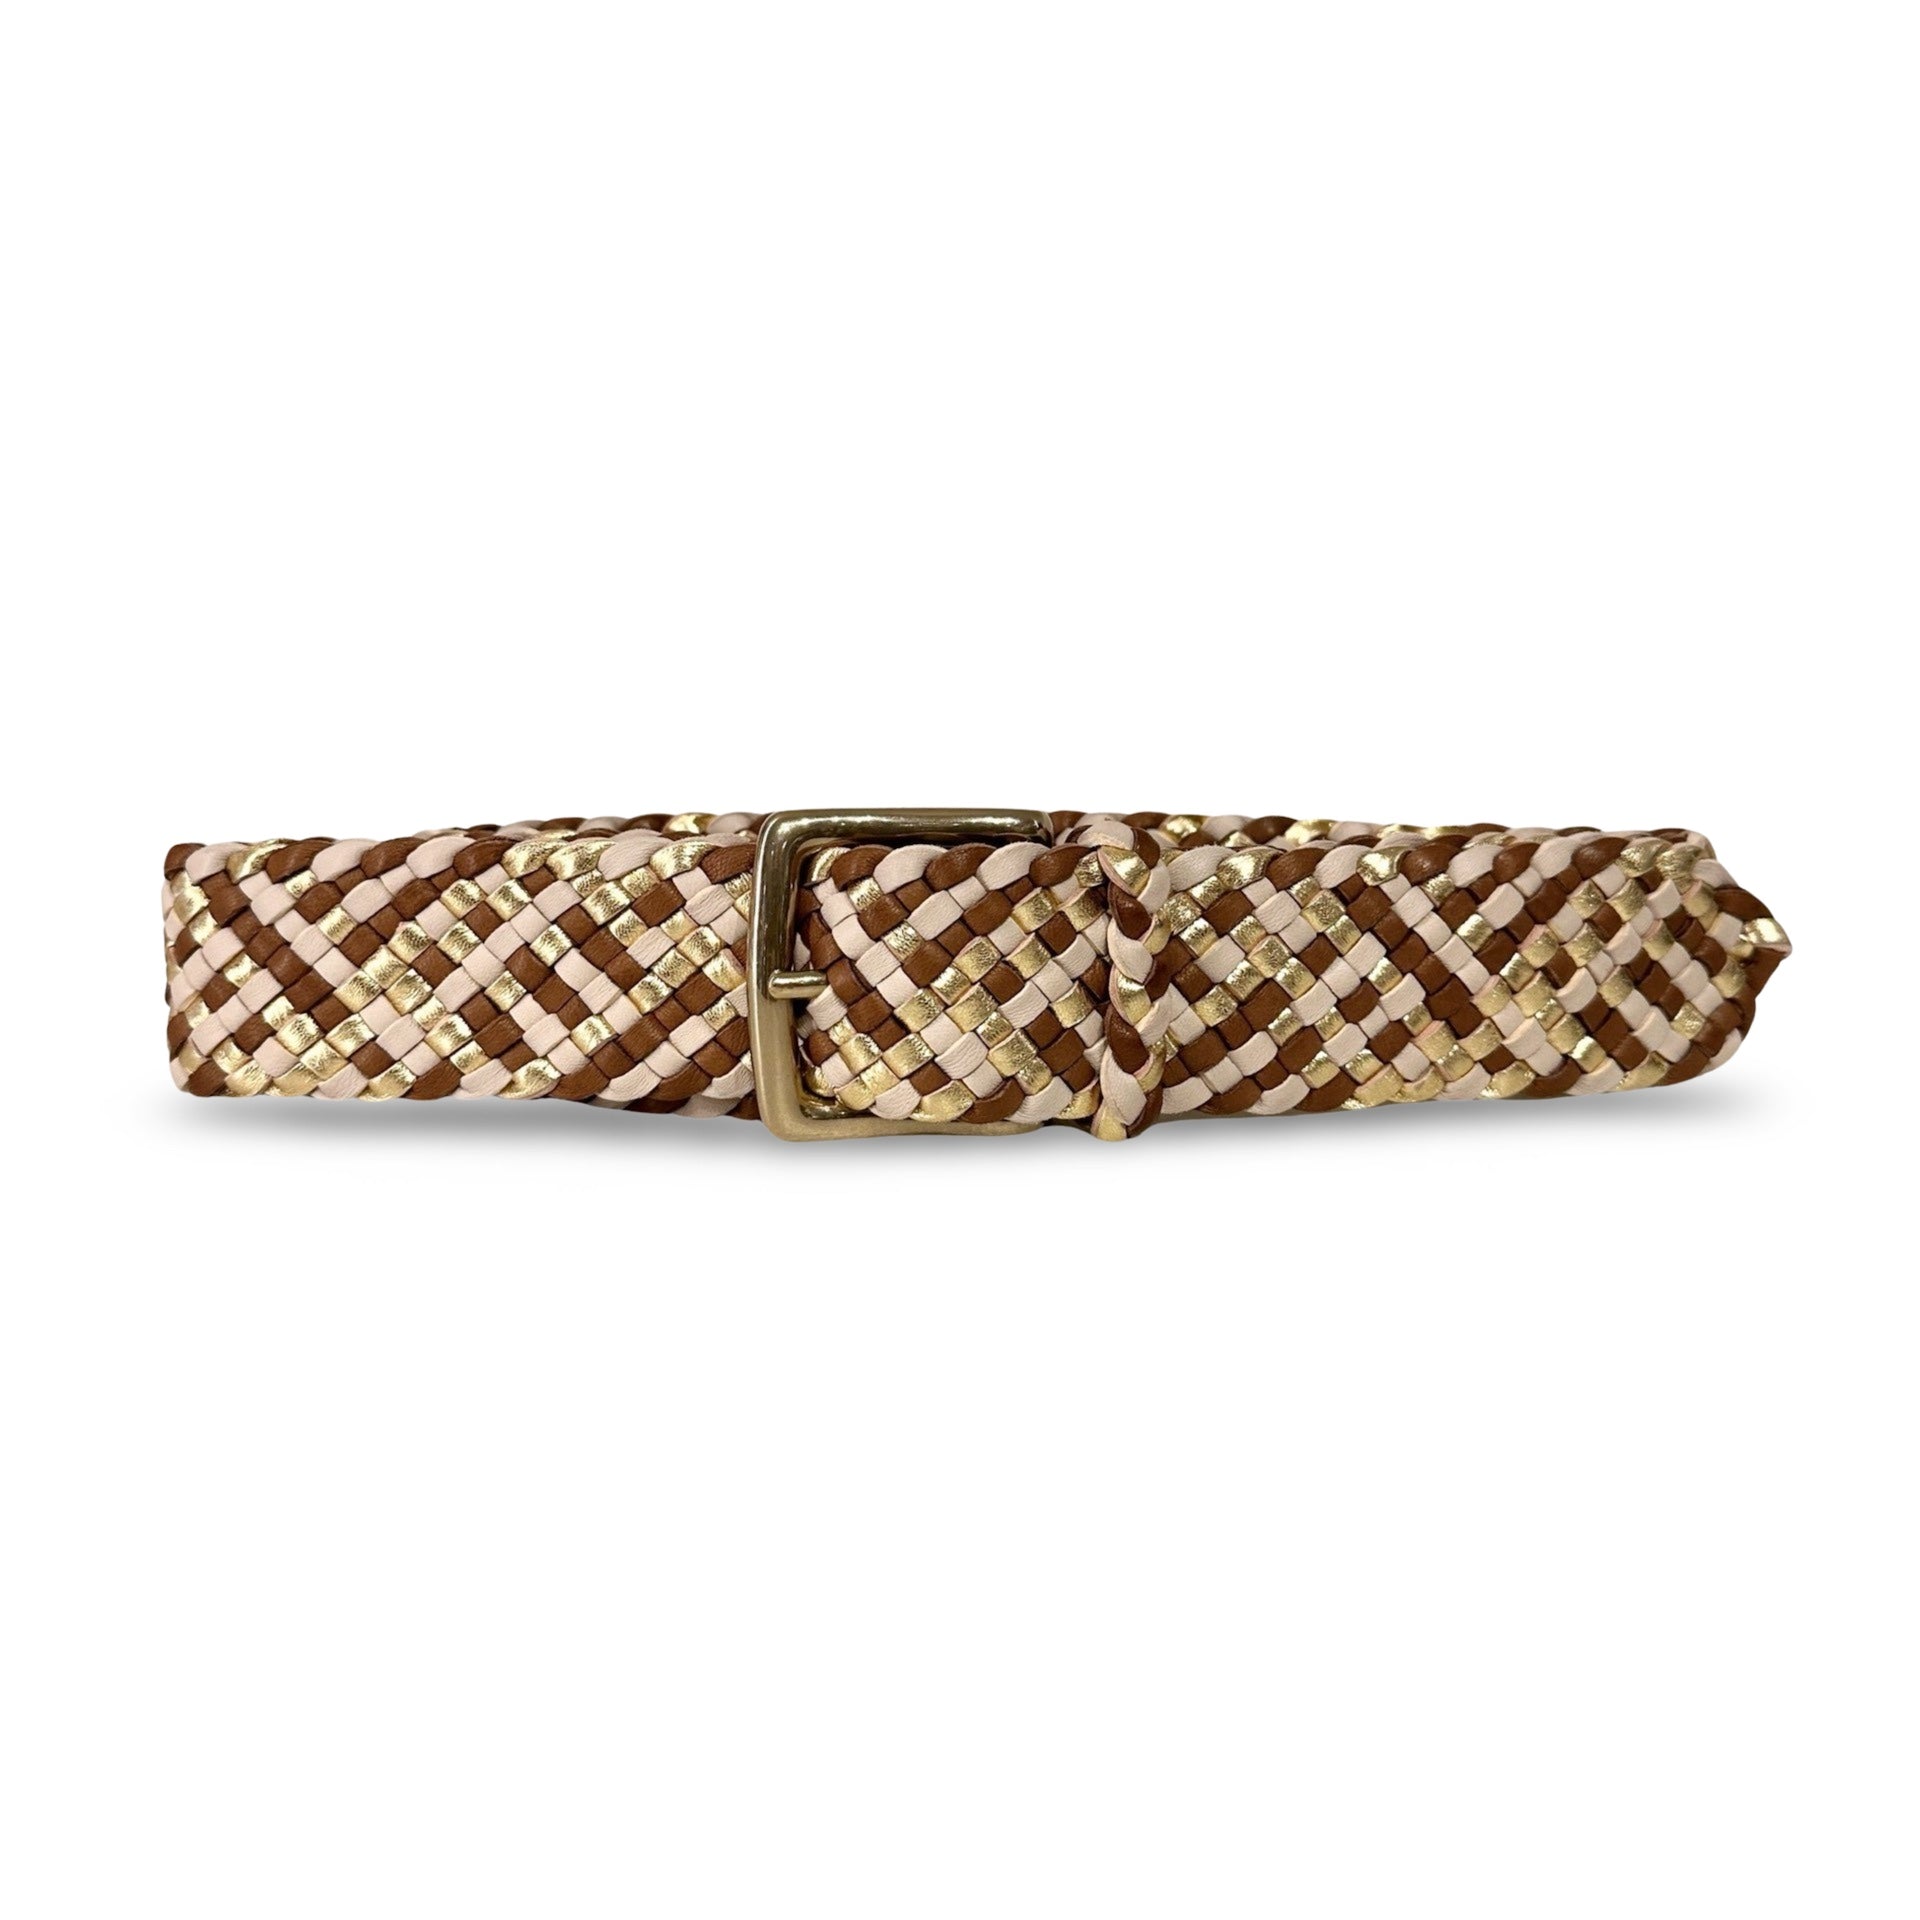 Der Braided Belt Desert von LABEL17 ist ein Gürtel mit Messingschnalle, gefertigt aus geschmeidigem, pflanzlich gegerbtem Lamm-Nappaleder, von Hand geflochten in drei Farben gold, creme und cognac.